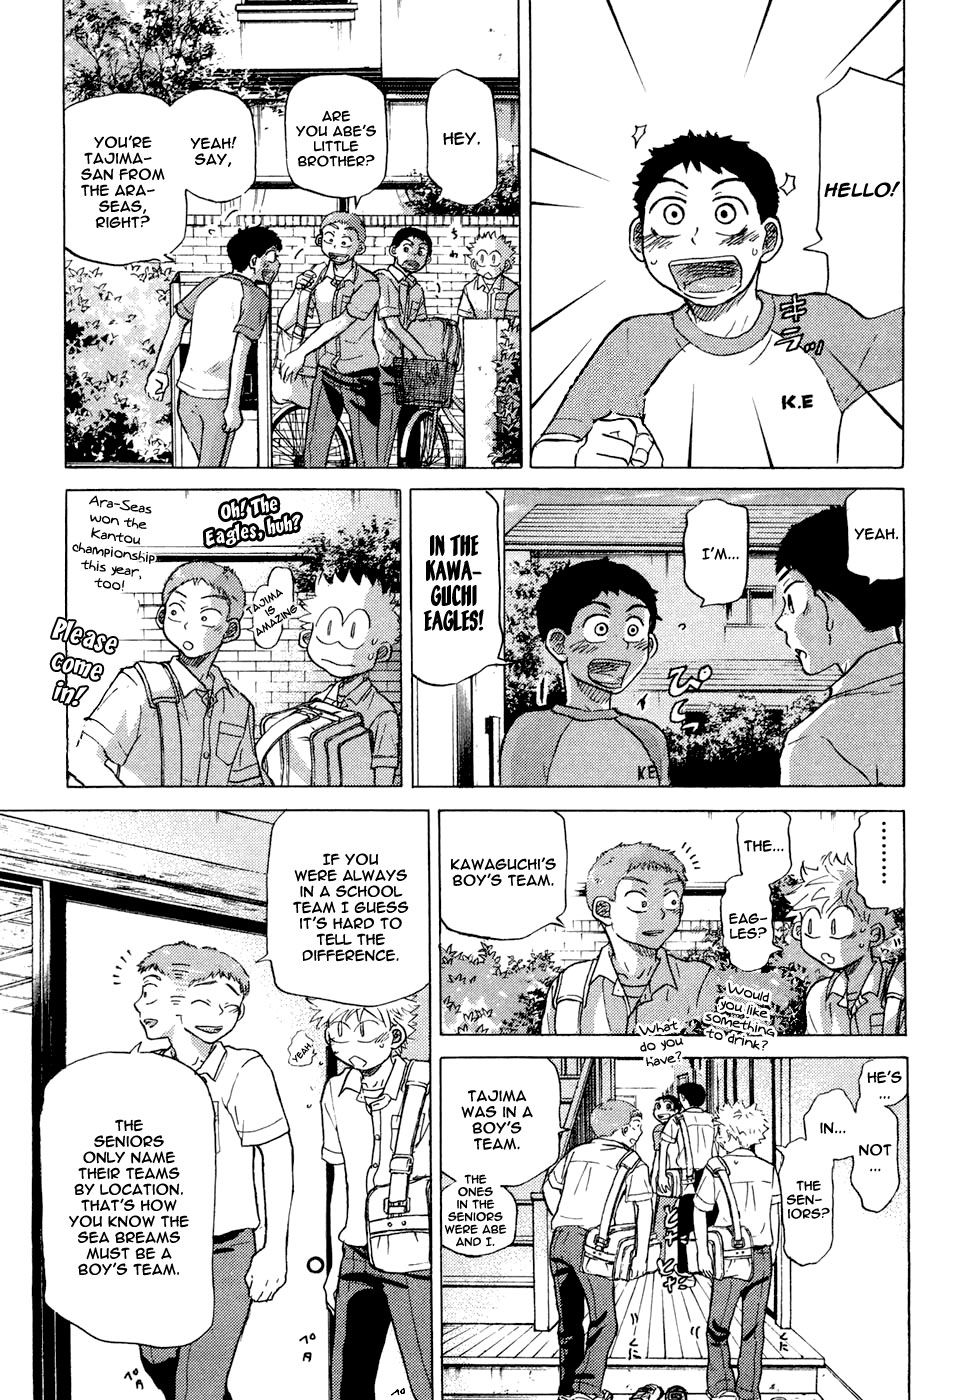 Ookiku Furikabutte - 27 page p_00022